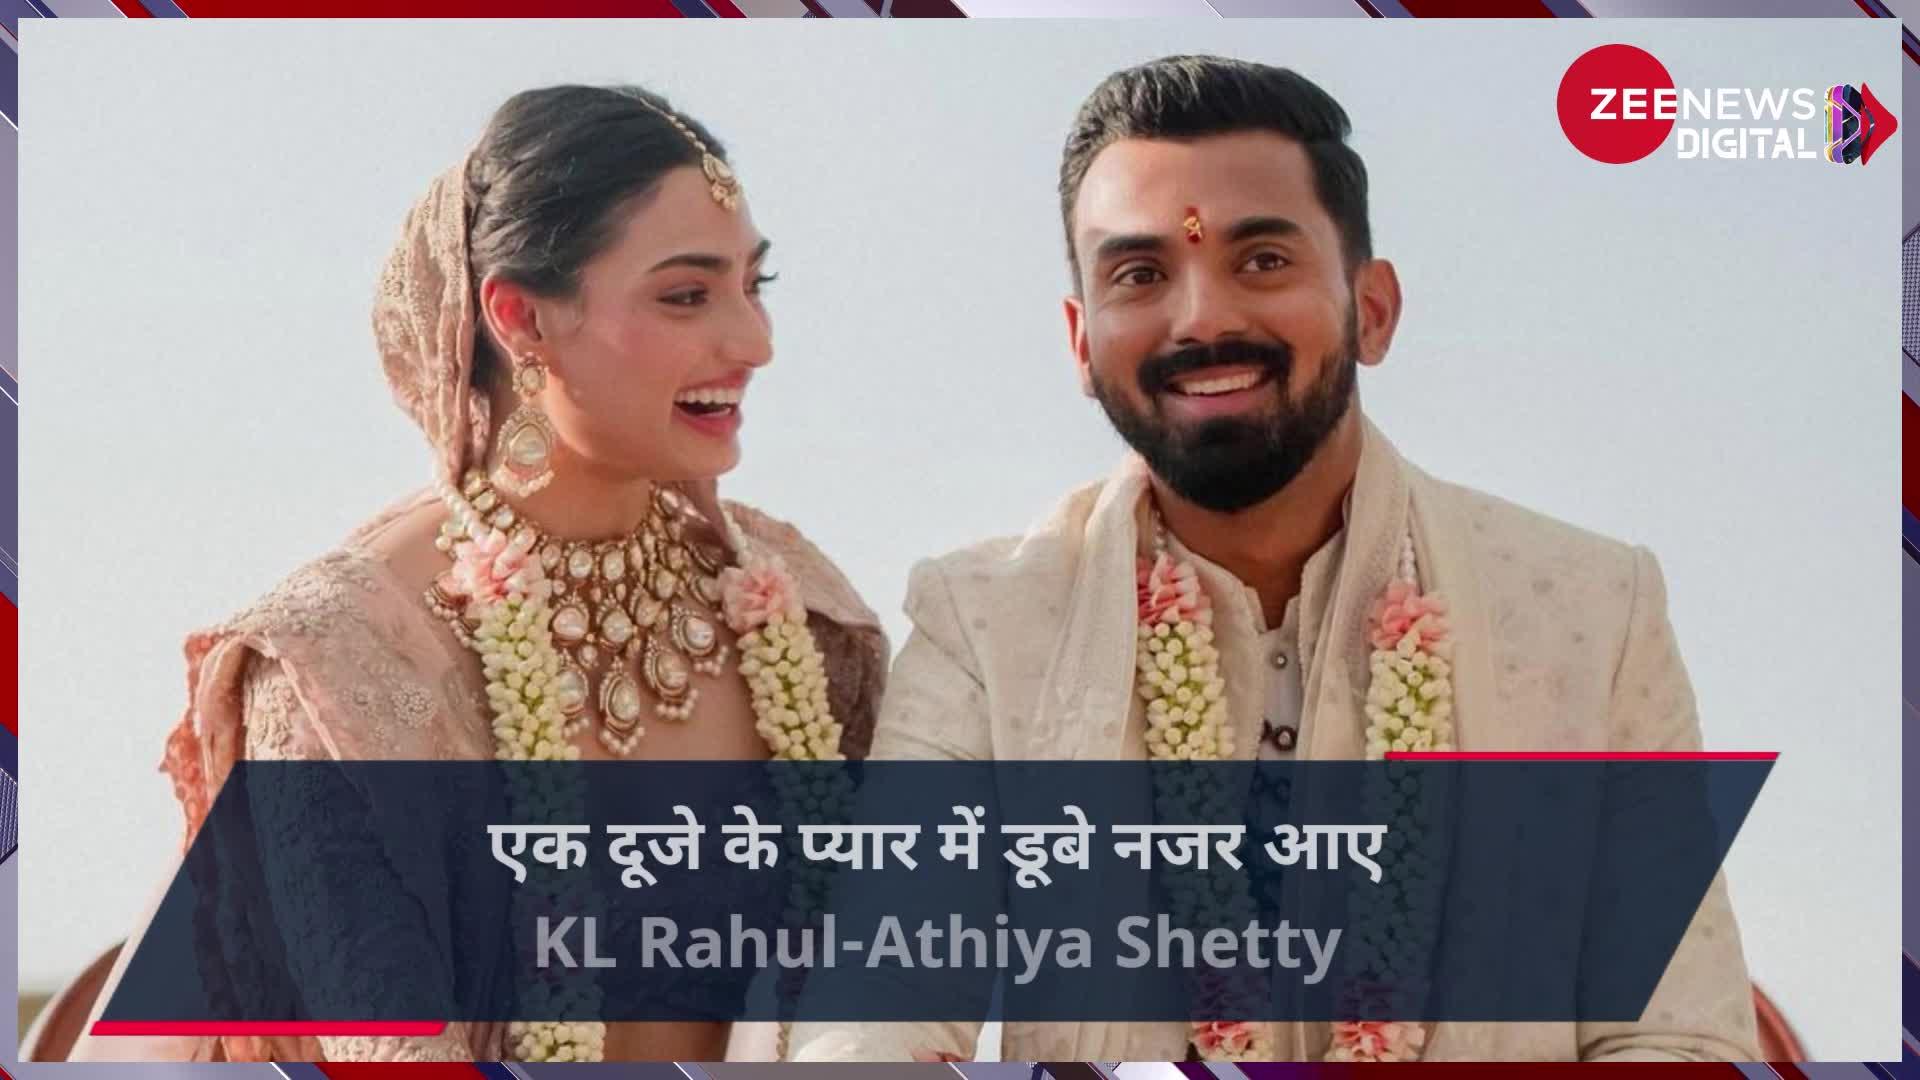 हाथों में हाथ थामे एक दूसरे संग फेरे लेते नजर आए KL Rahul-Athiya Shetty, देखें शादी की खूबसूरत तस्वीरें